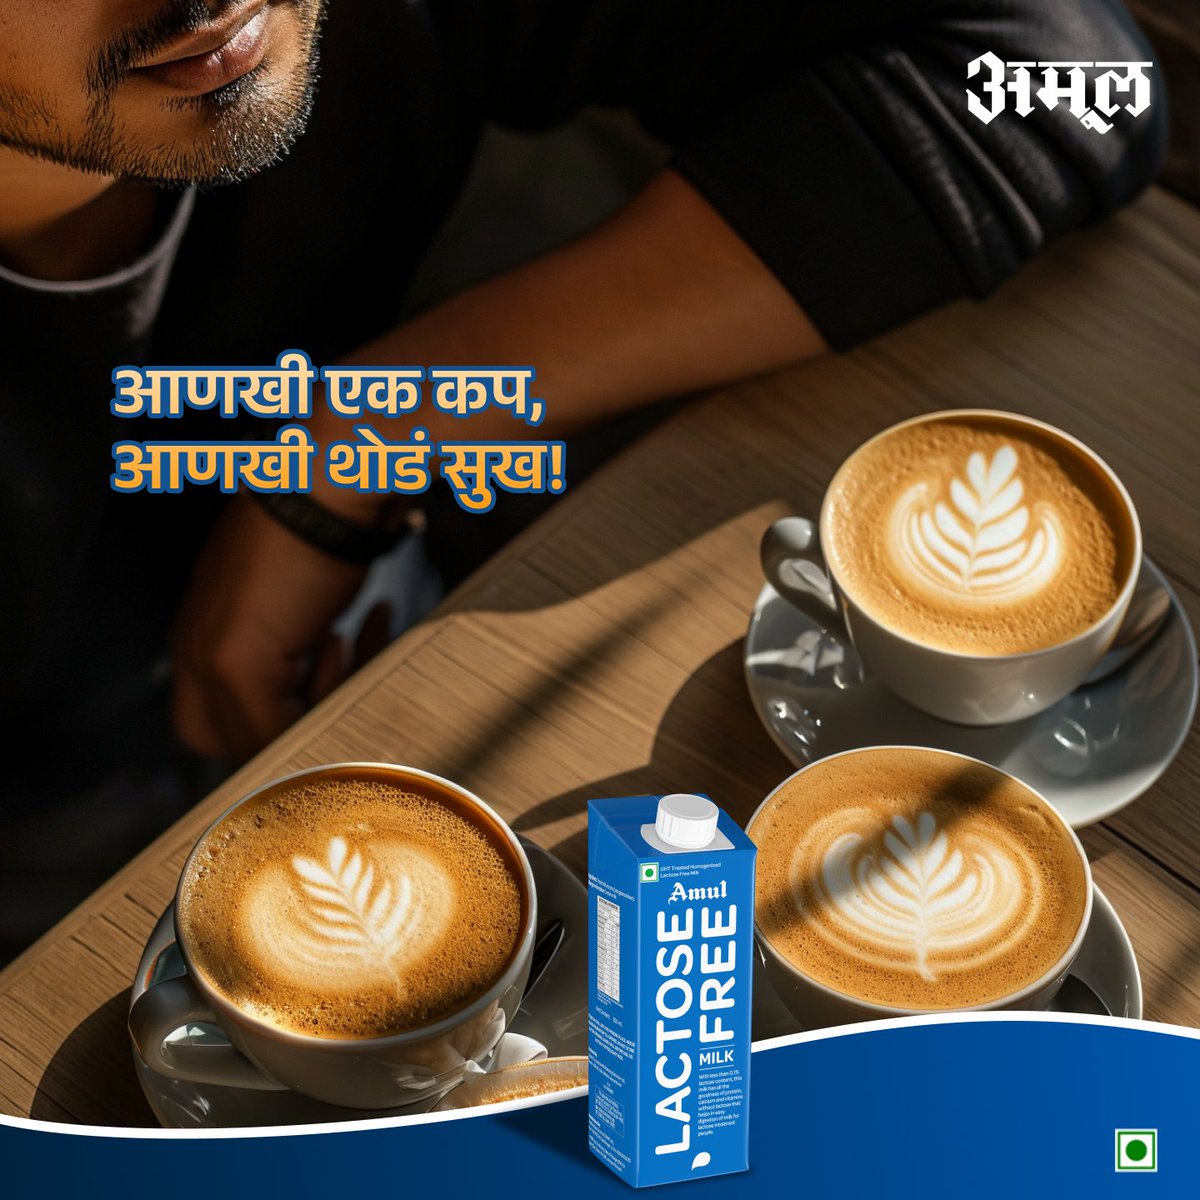 हा कॉफीचा 'वर्ल्ड' कप आहे का?... कारण ह्याने माझं जग व्यापलं आहे.
.
.
.
#Amul #AmulIndia #AmulMaharashtra #AmulMarathi #Coffee #LactoseFree #Milk